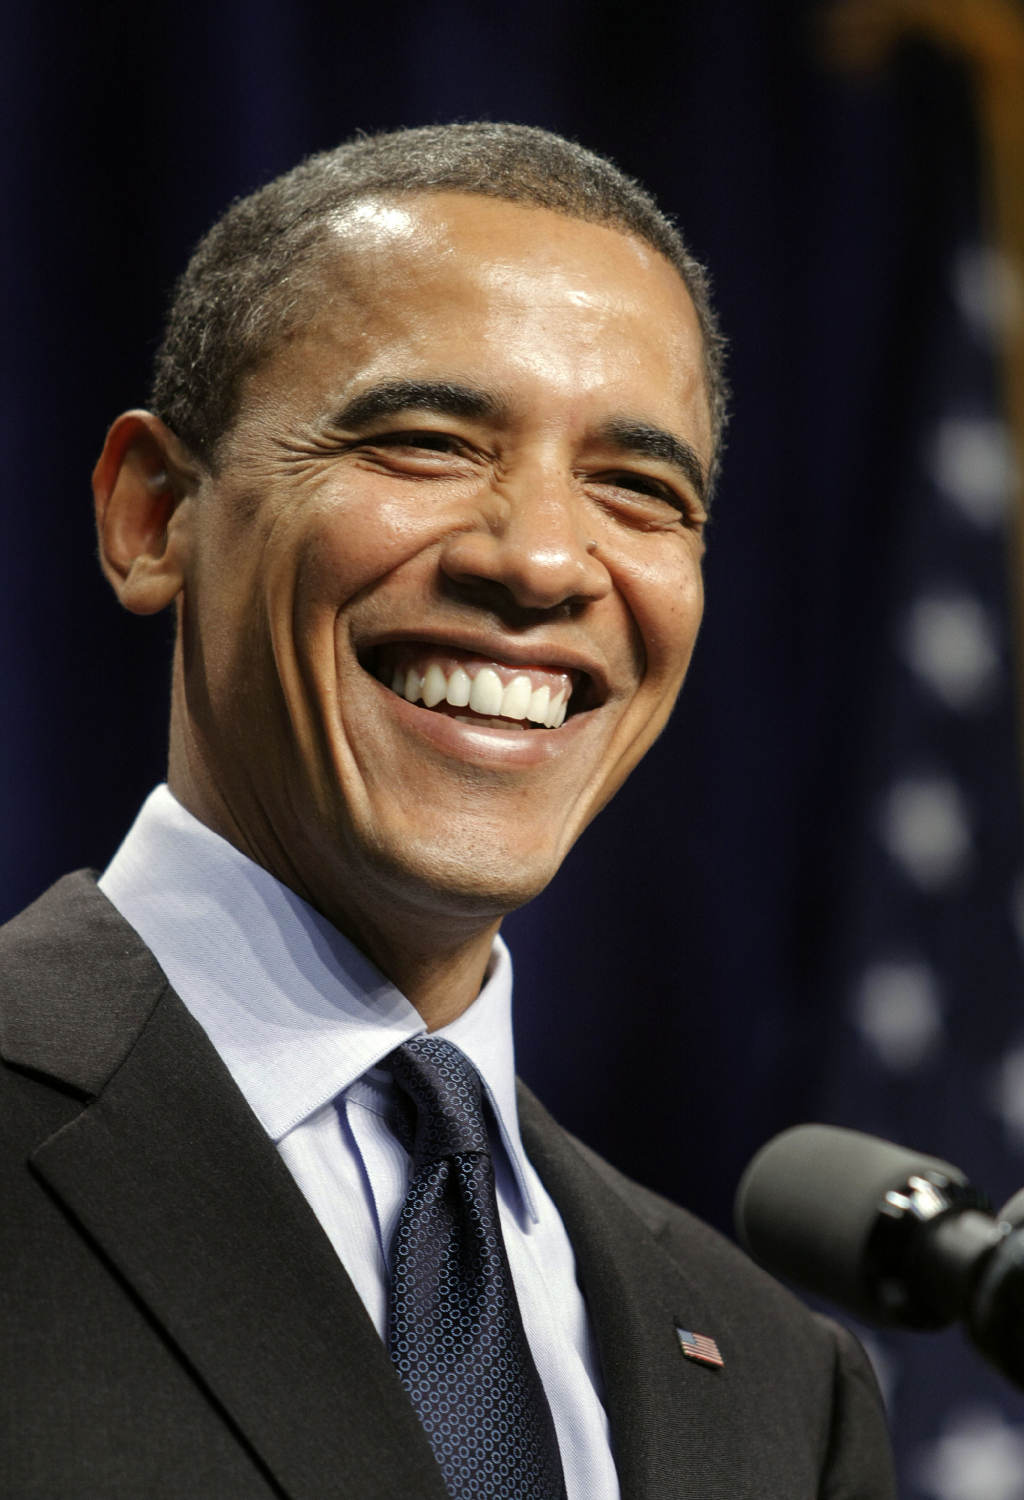 Világsztárokkal készül bulizni Obama a 60-ik szülinapján